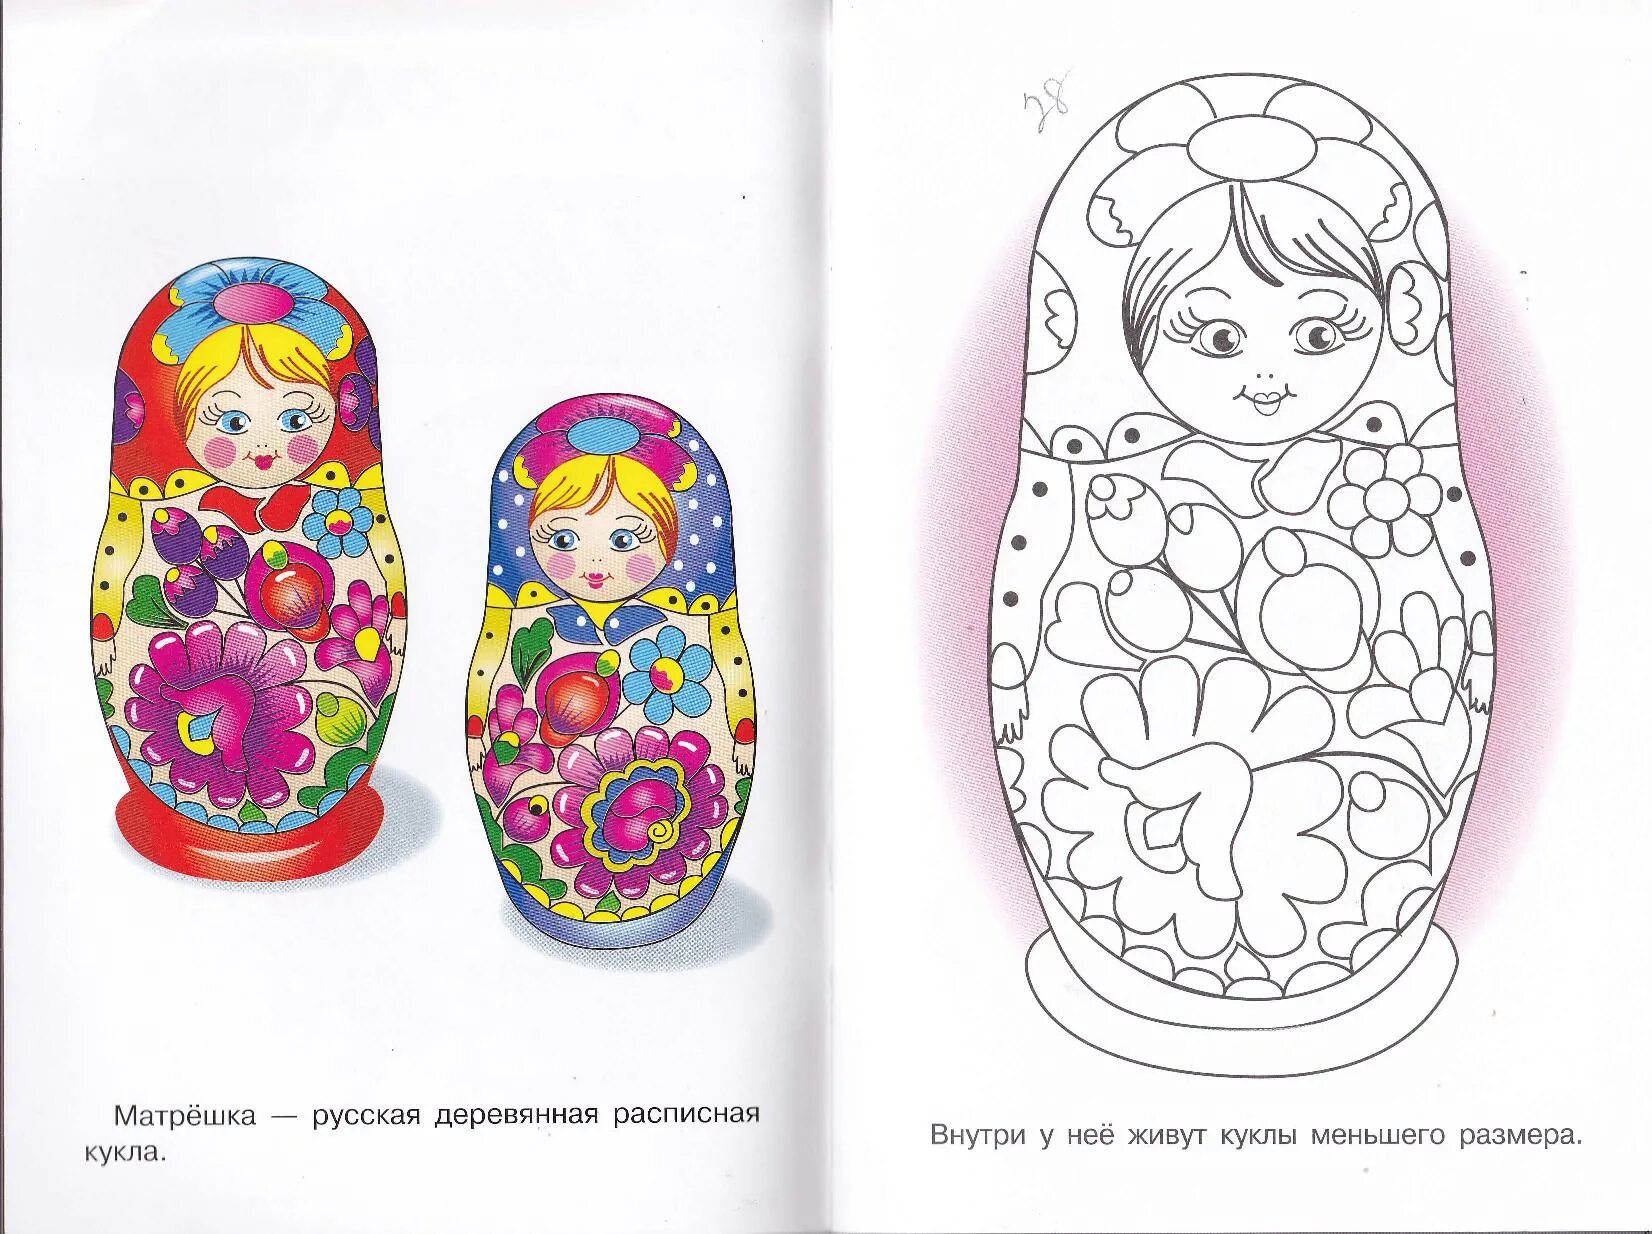 Detailed matryoshka coloring page